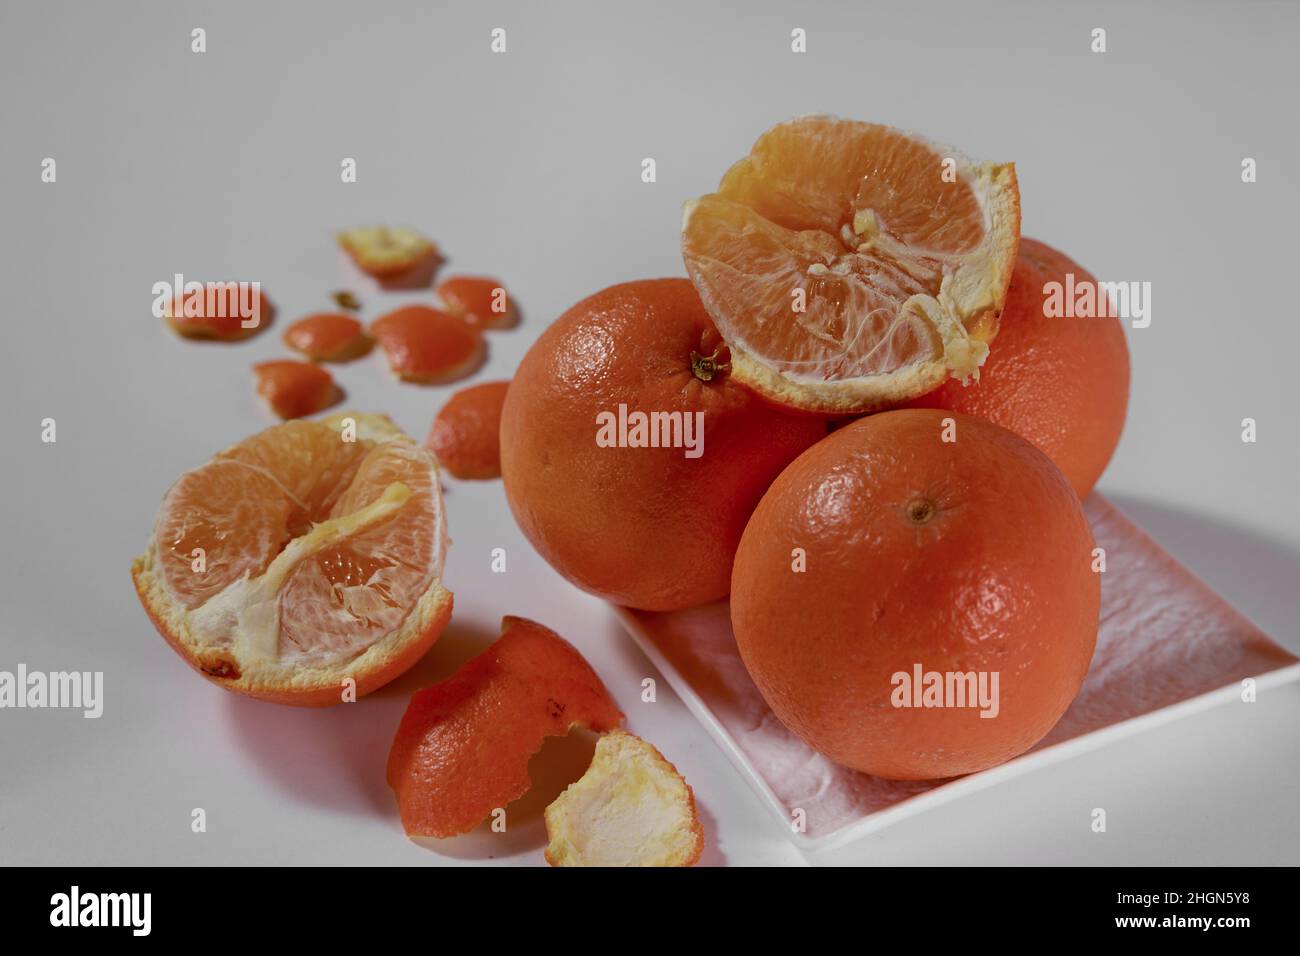 Quattro arance giacciono su una piastra di ceramica bianca e una è rotta a metà con una buccia sbucciata su uno sfondo bianco. Foto Stock